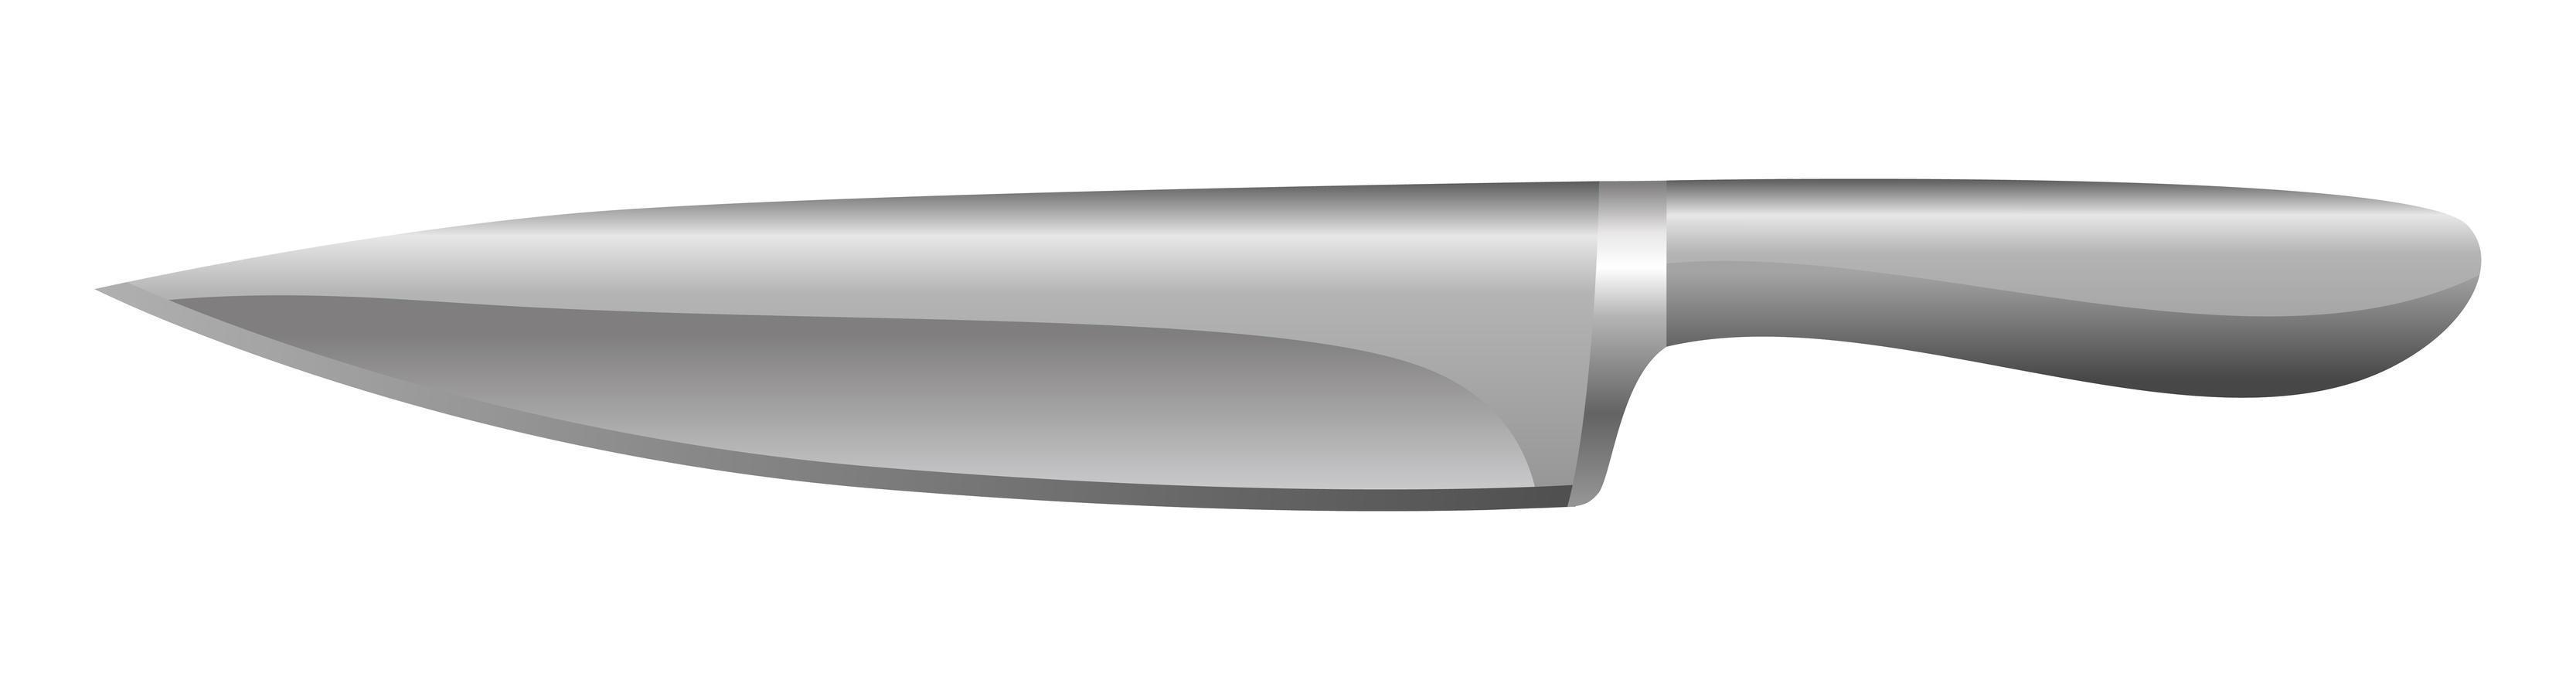 coltello in acciaio realistico isolato su sfondo bianco - vettore